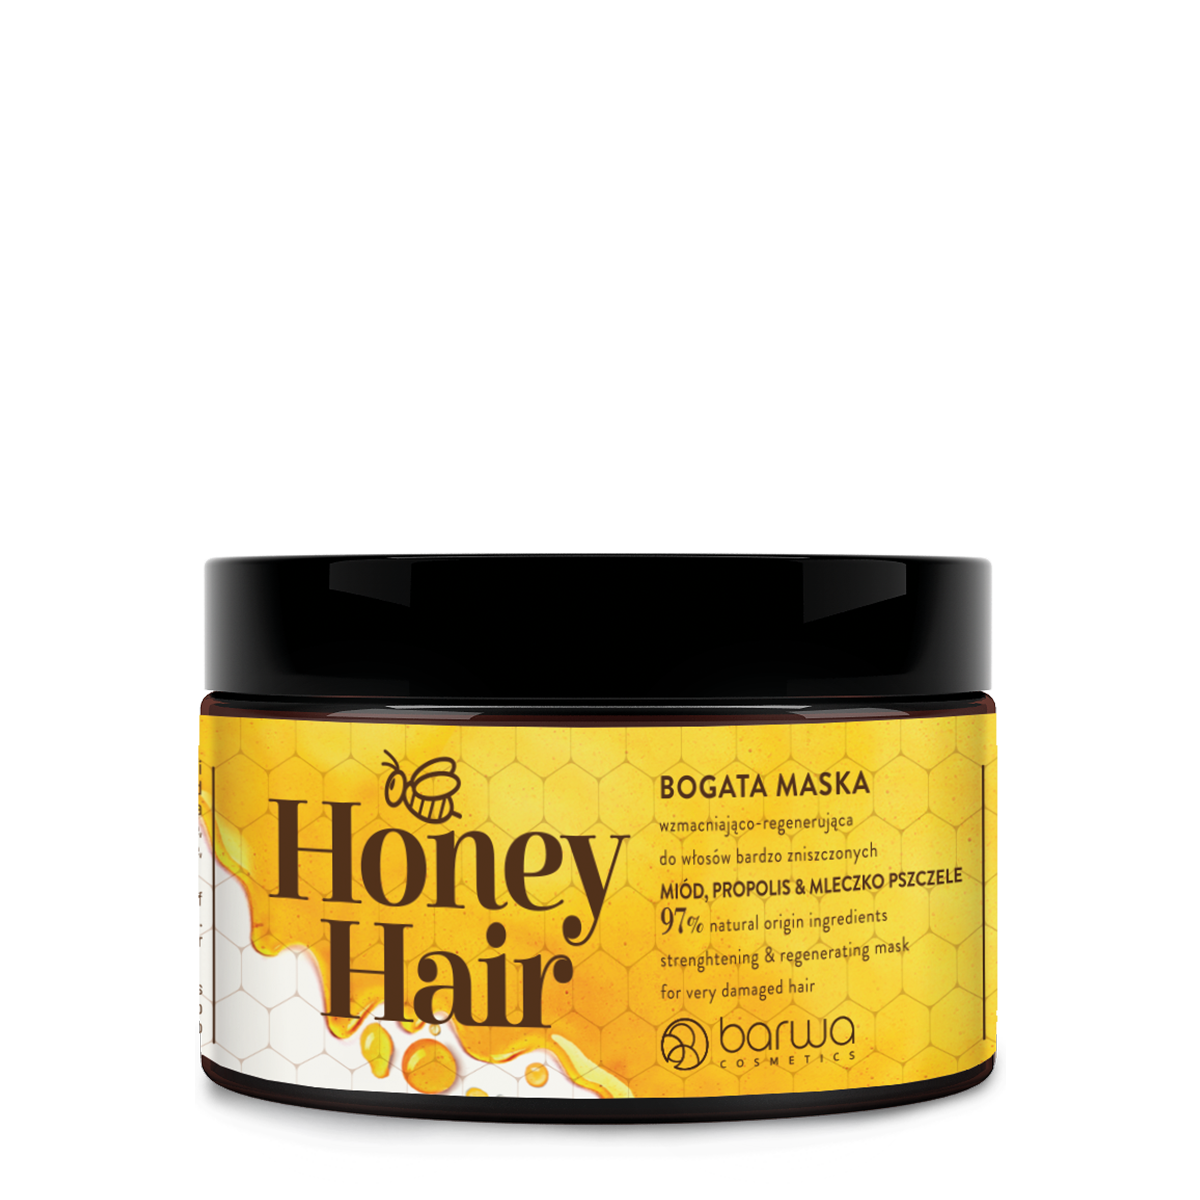 Укрепляющая и восстанавливающая маска для волос Barwa Honey Hair, 220 мл